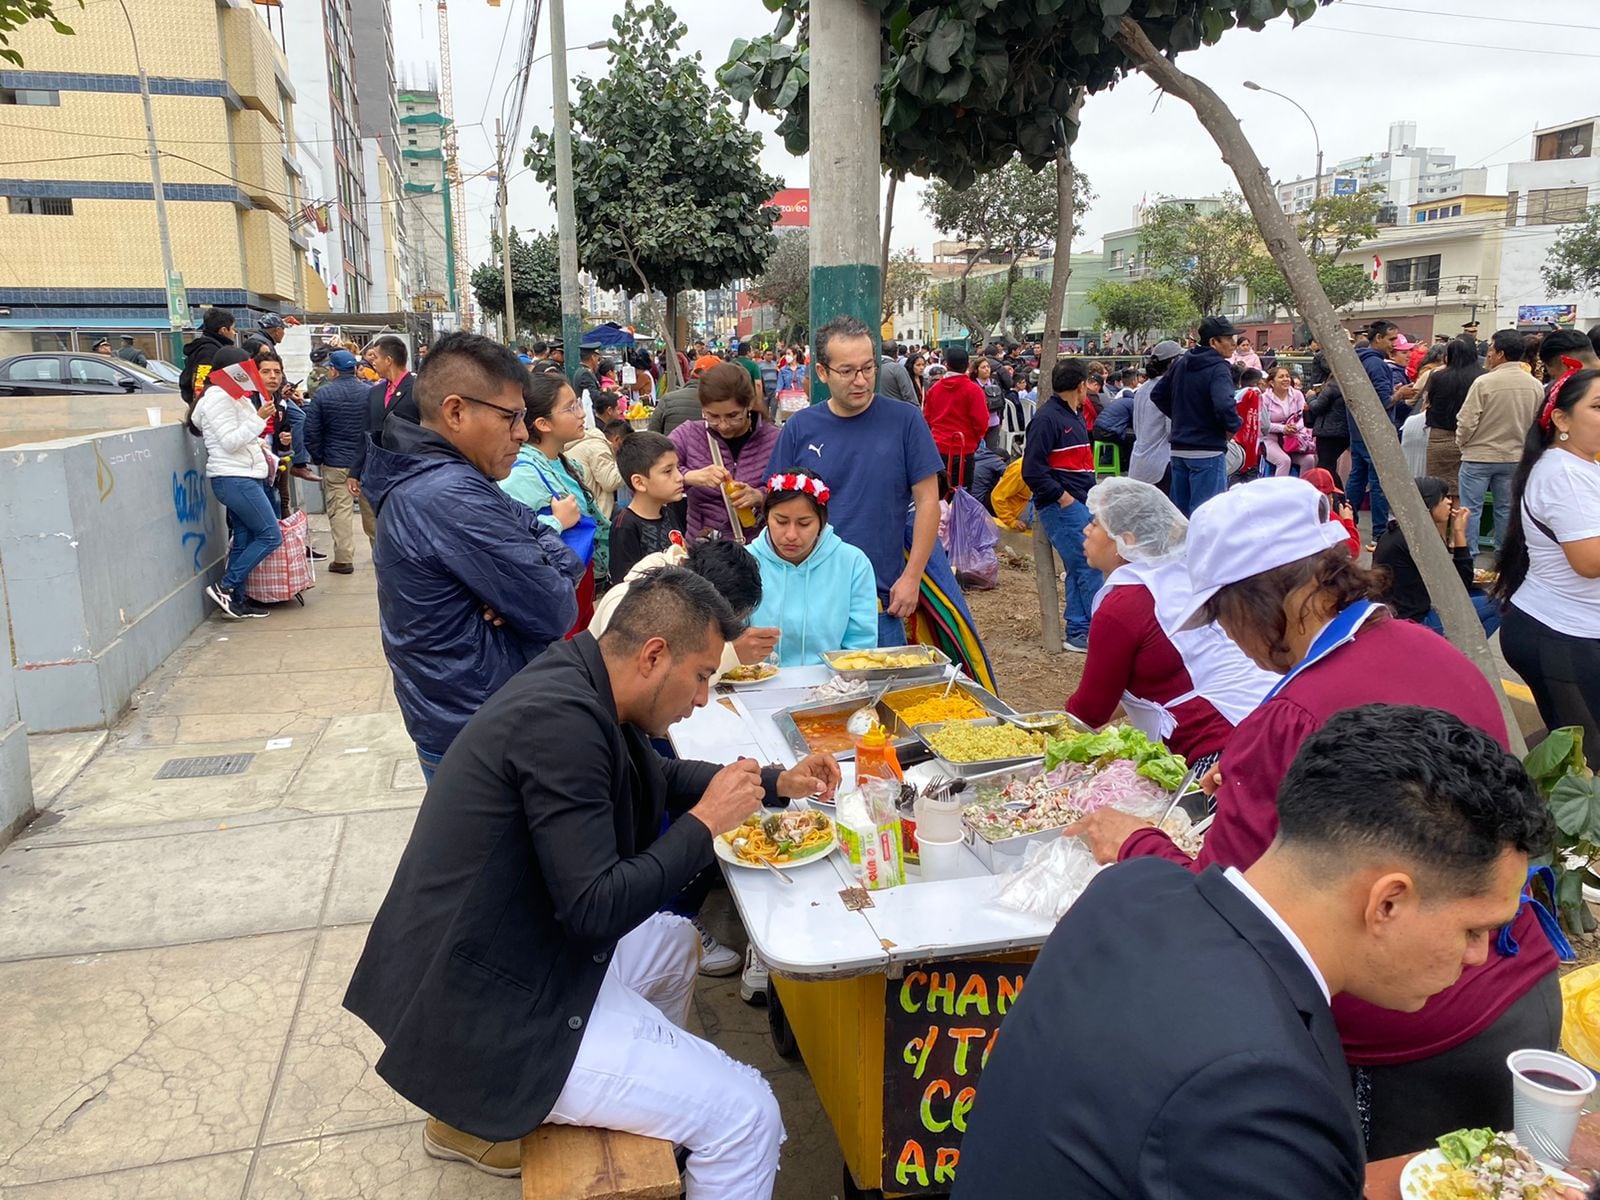 Los puestos de comida a lo largo de toda la avenida Brasil se encuentran abarrotados de personas | Infobae Perú / Clara Giraldo